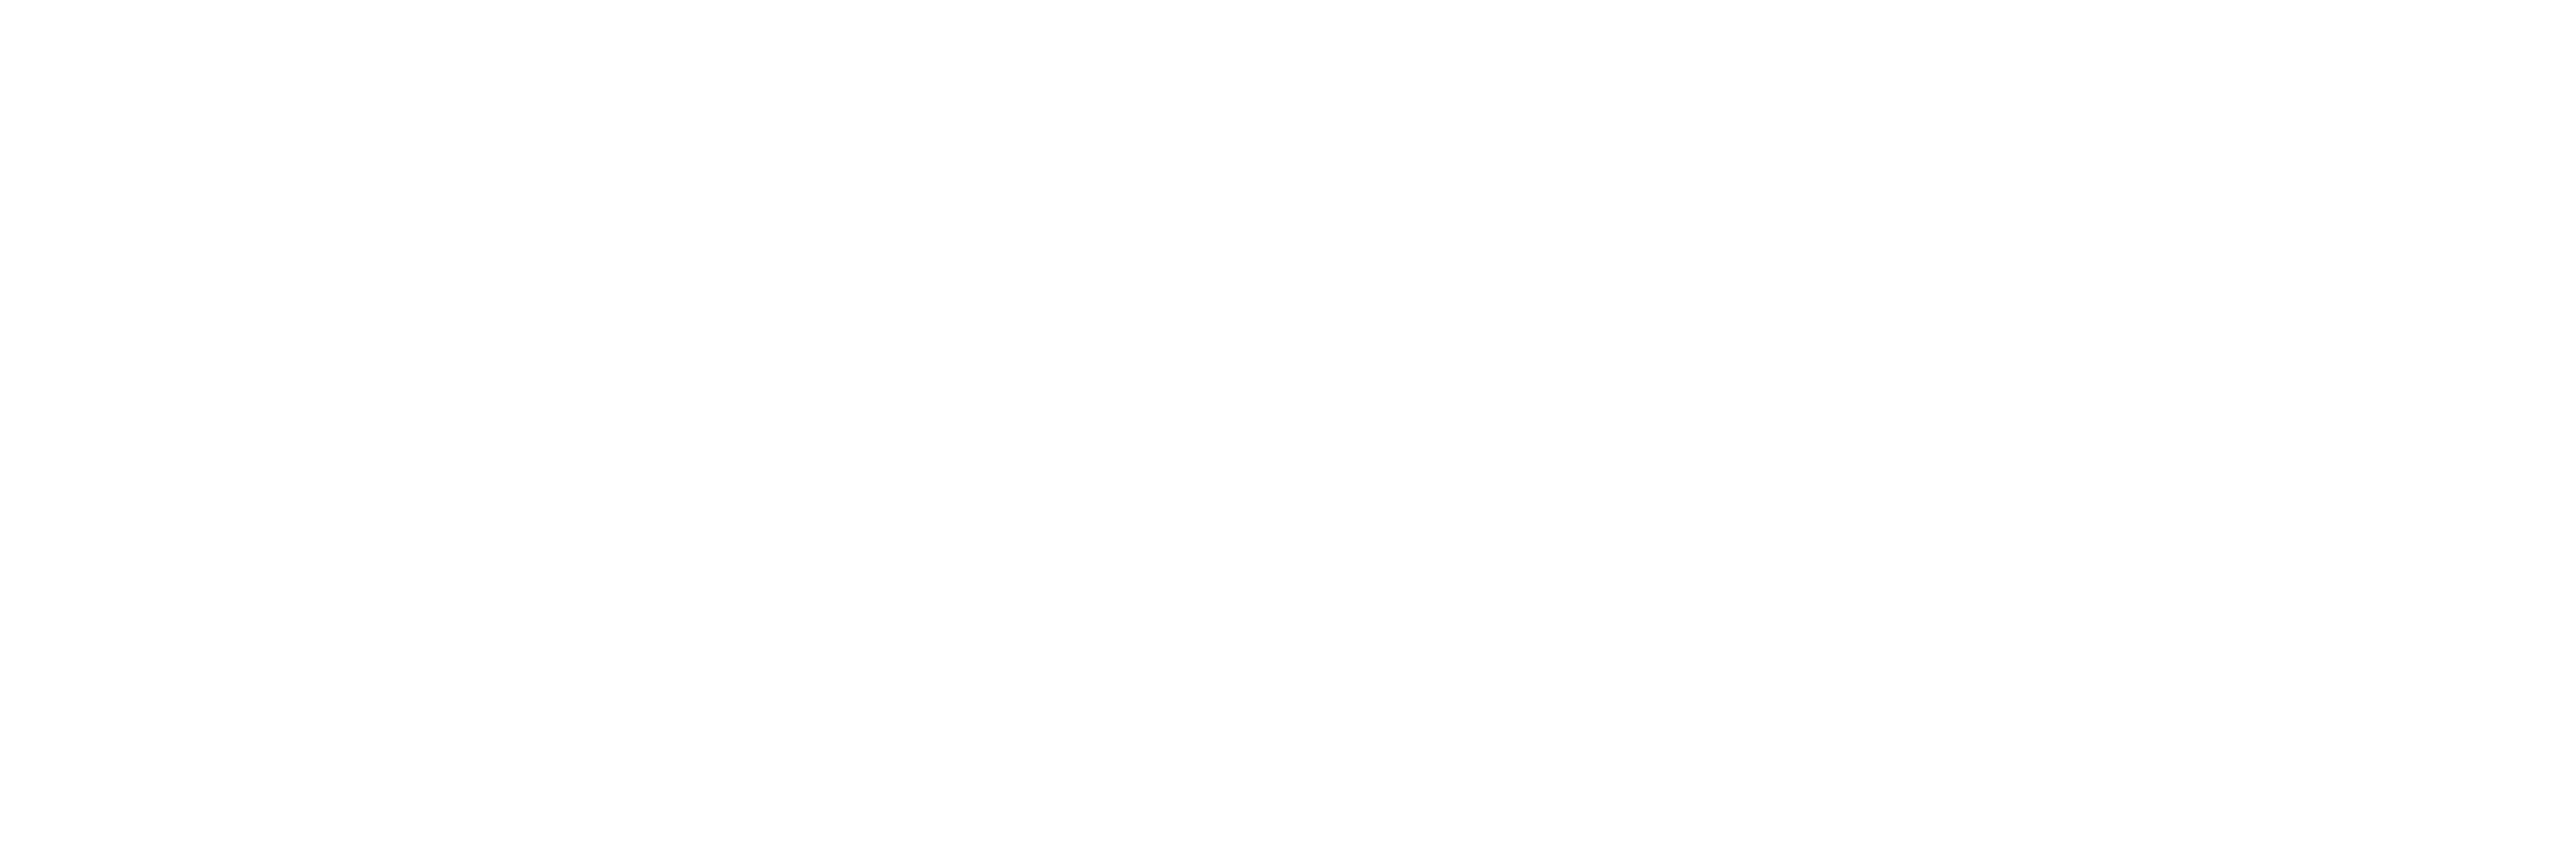 Boudoir Erotic Boutique